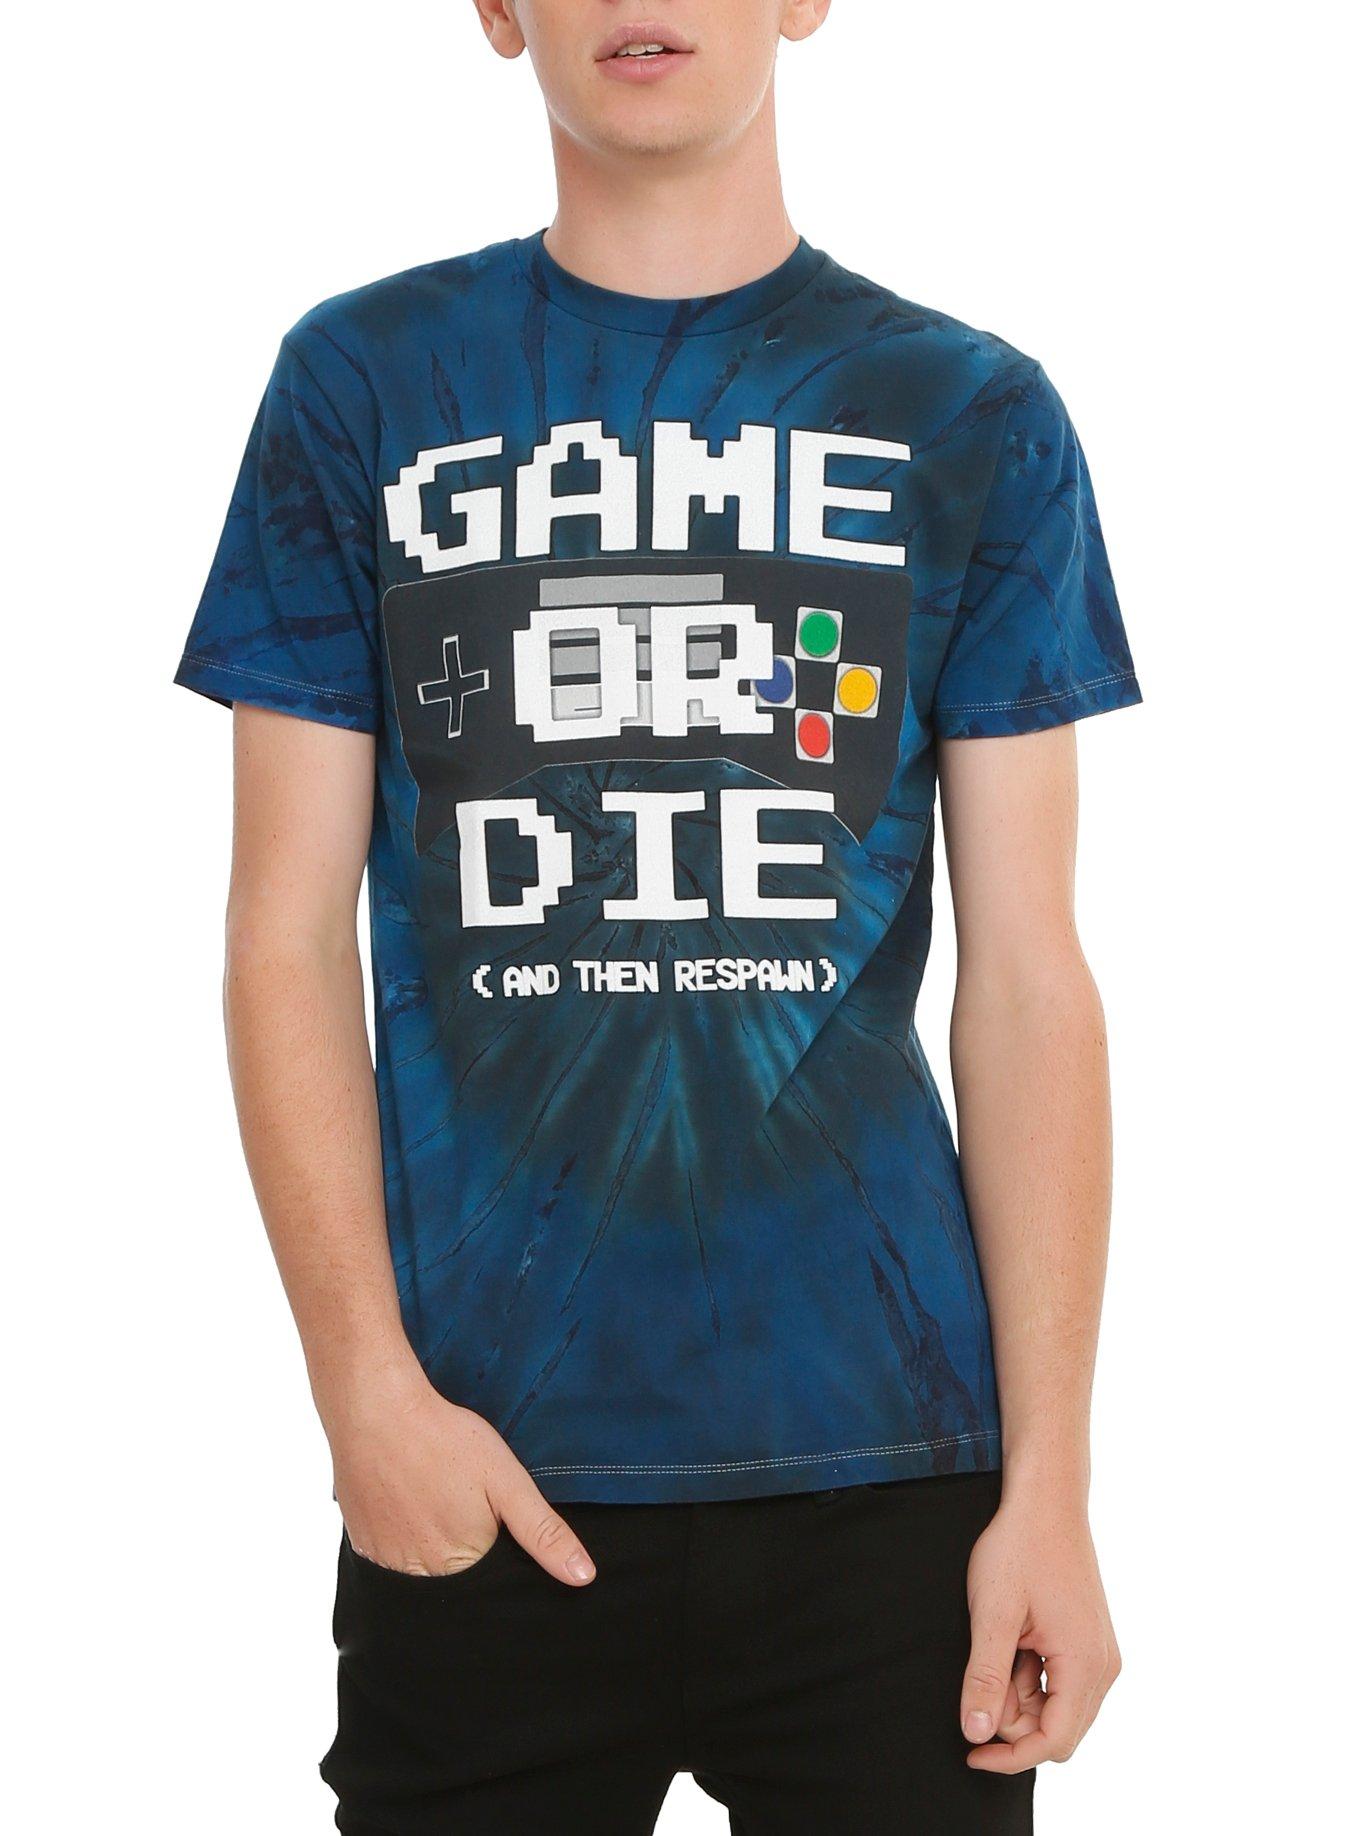 Game Or Die Tie Dye T-Shirt, ROYAL BLUE, hi-res